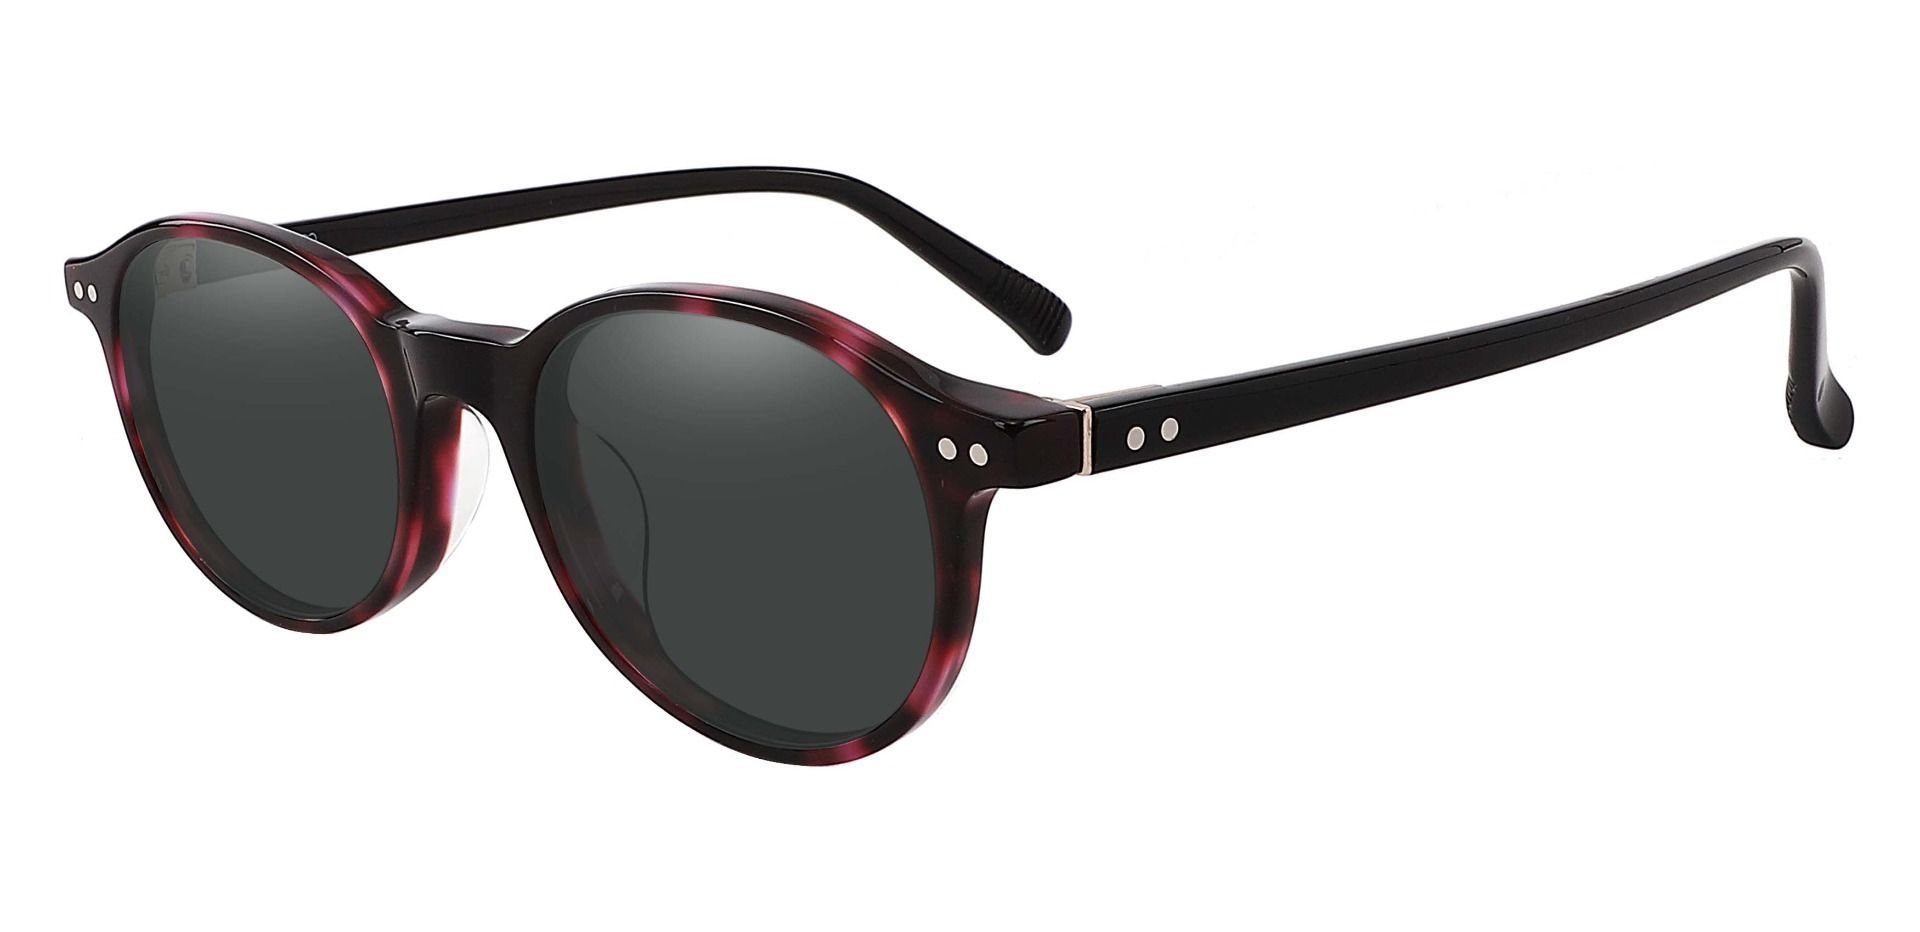 Avon Oval Prescription Sunglasses - Tortoise Frame With Gray Lenses